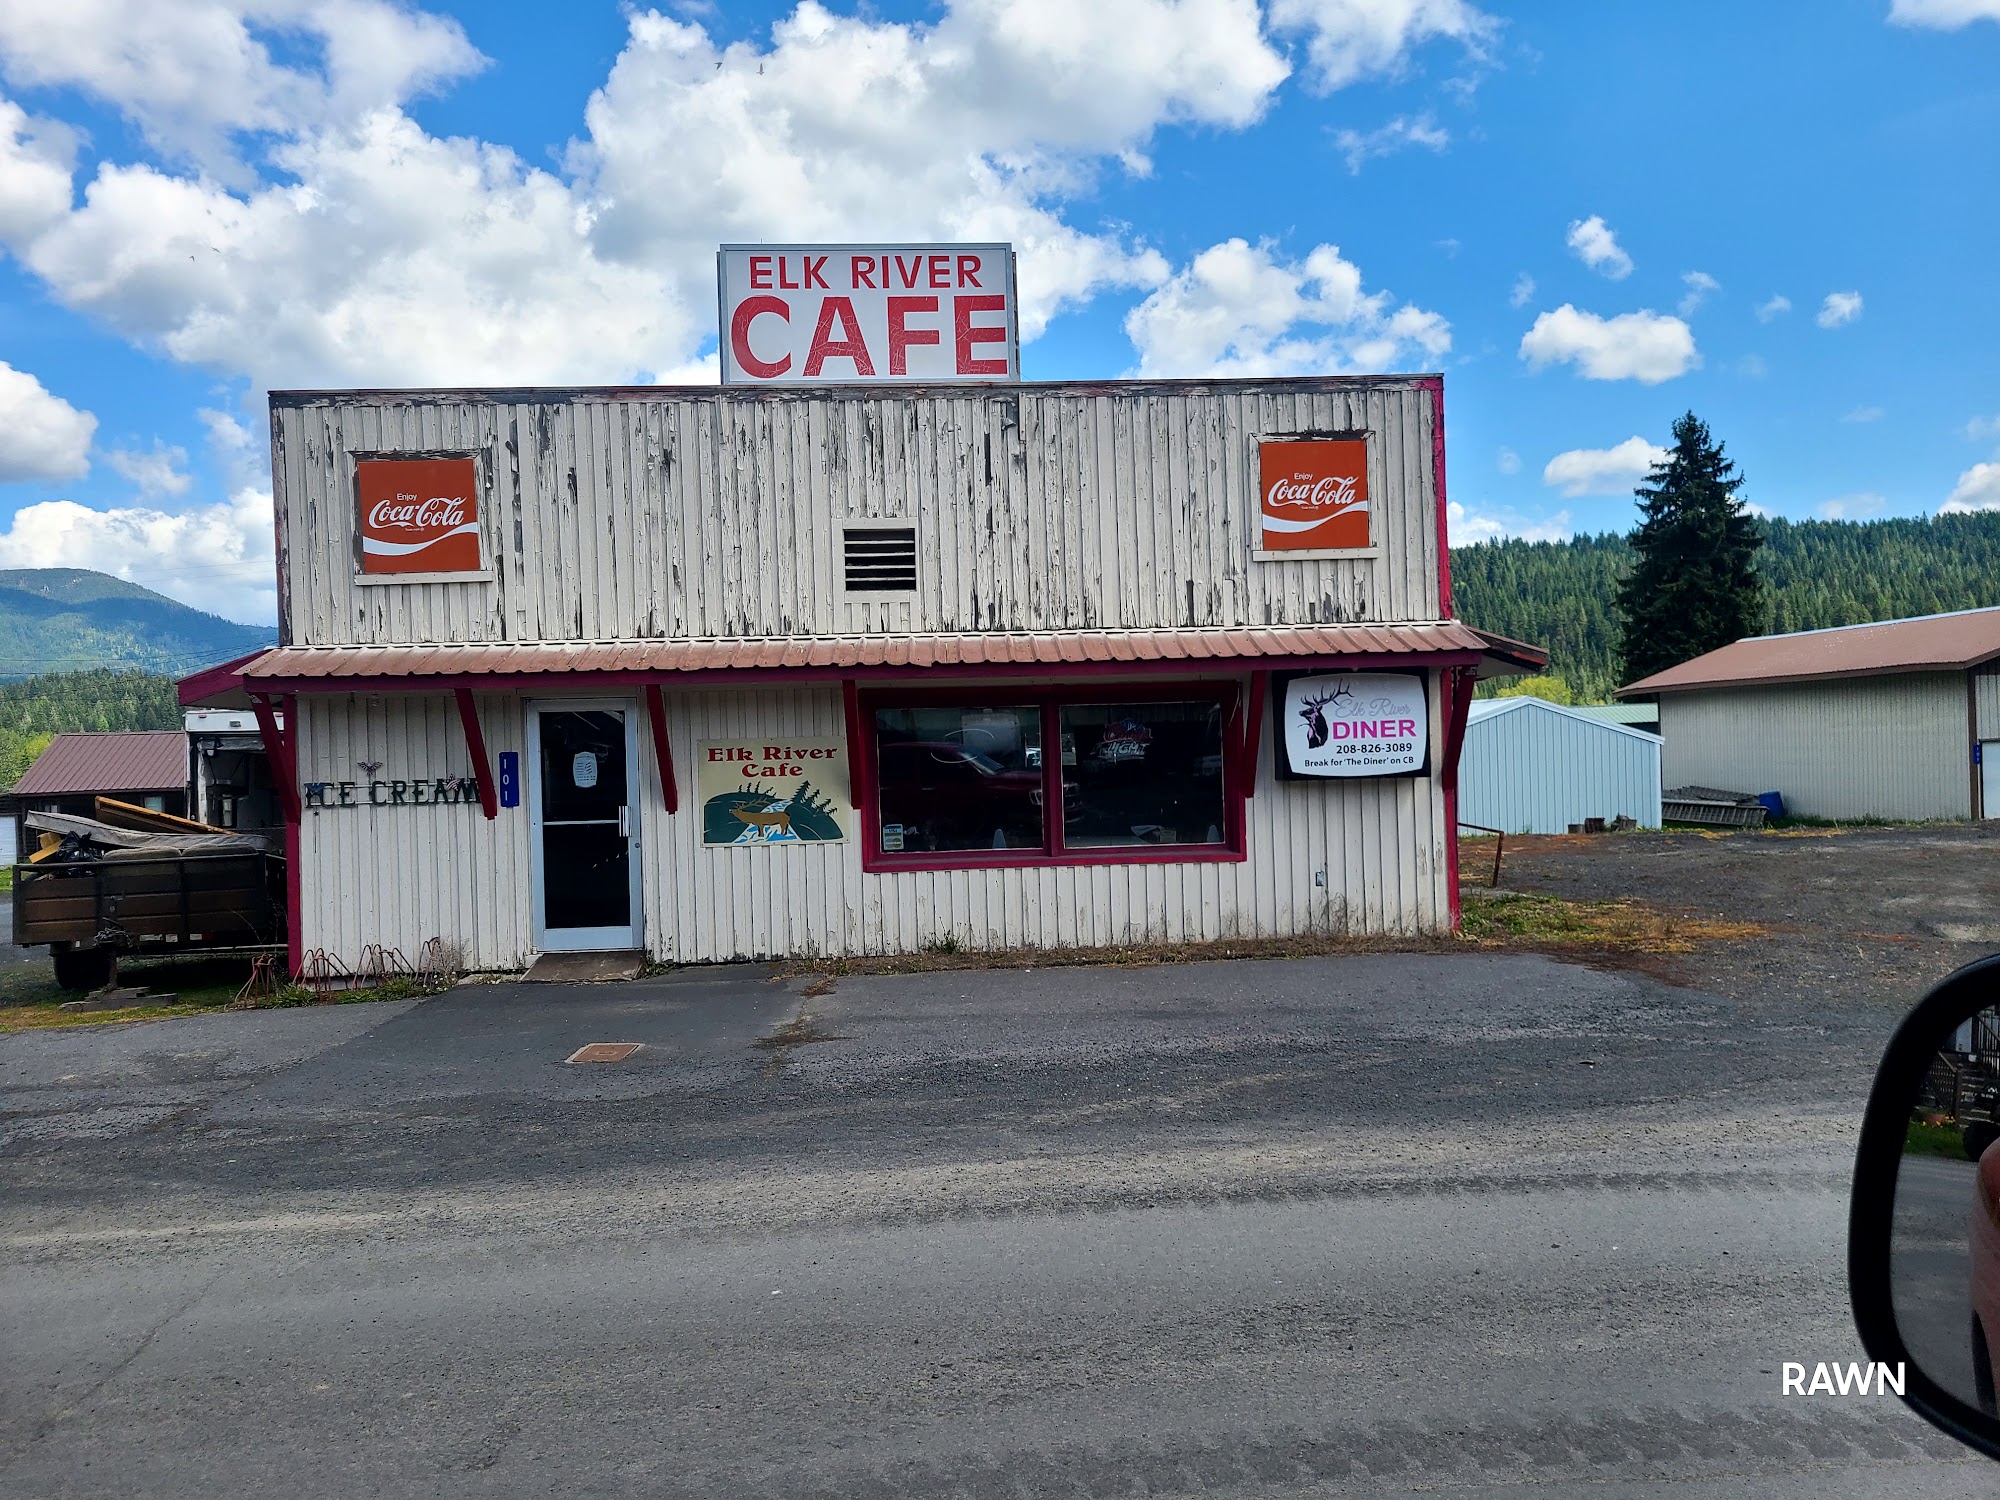 Elk River cafe 101 N 1st St, Elk River, ID 83541